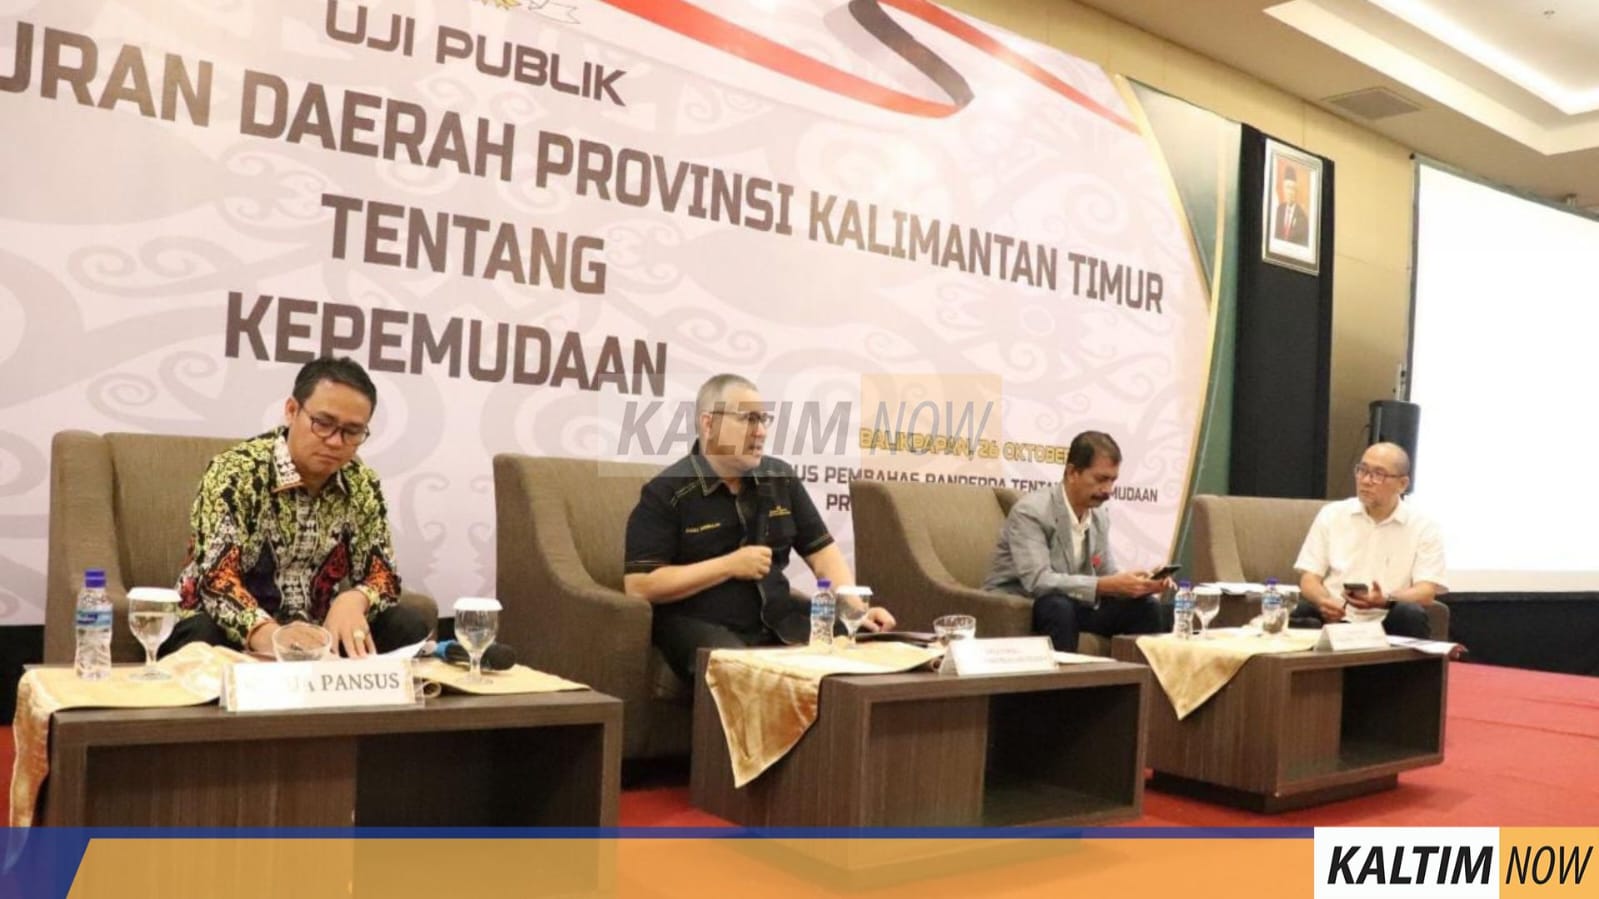 Panitia Khusus (Pansus) Kepemudaan DPRD Provinsi Kalimantan Timur (Kaltim), menggelar uji publik di Hotel Platinum Balikpapan, Rabu (26/10/2022). Sumber: Humas DPRD Kaltim